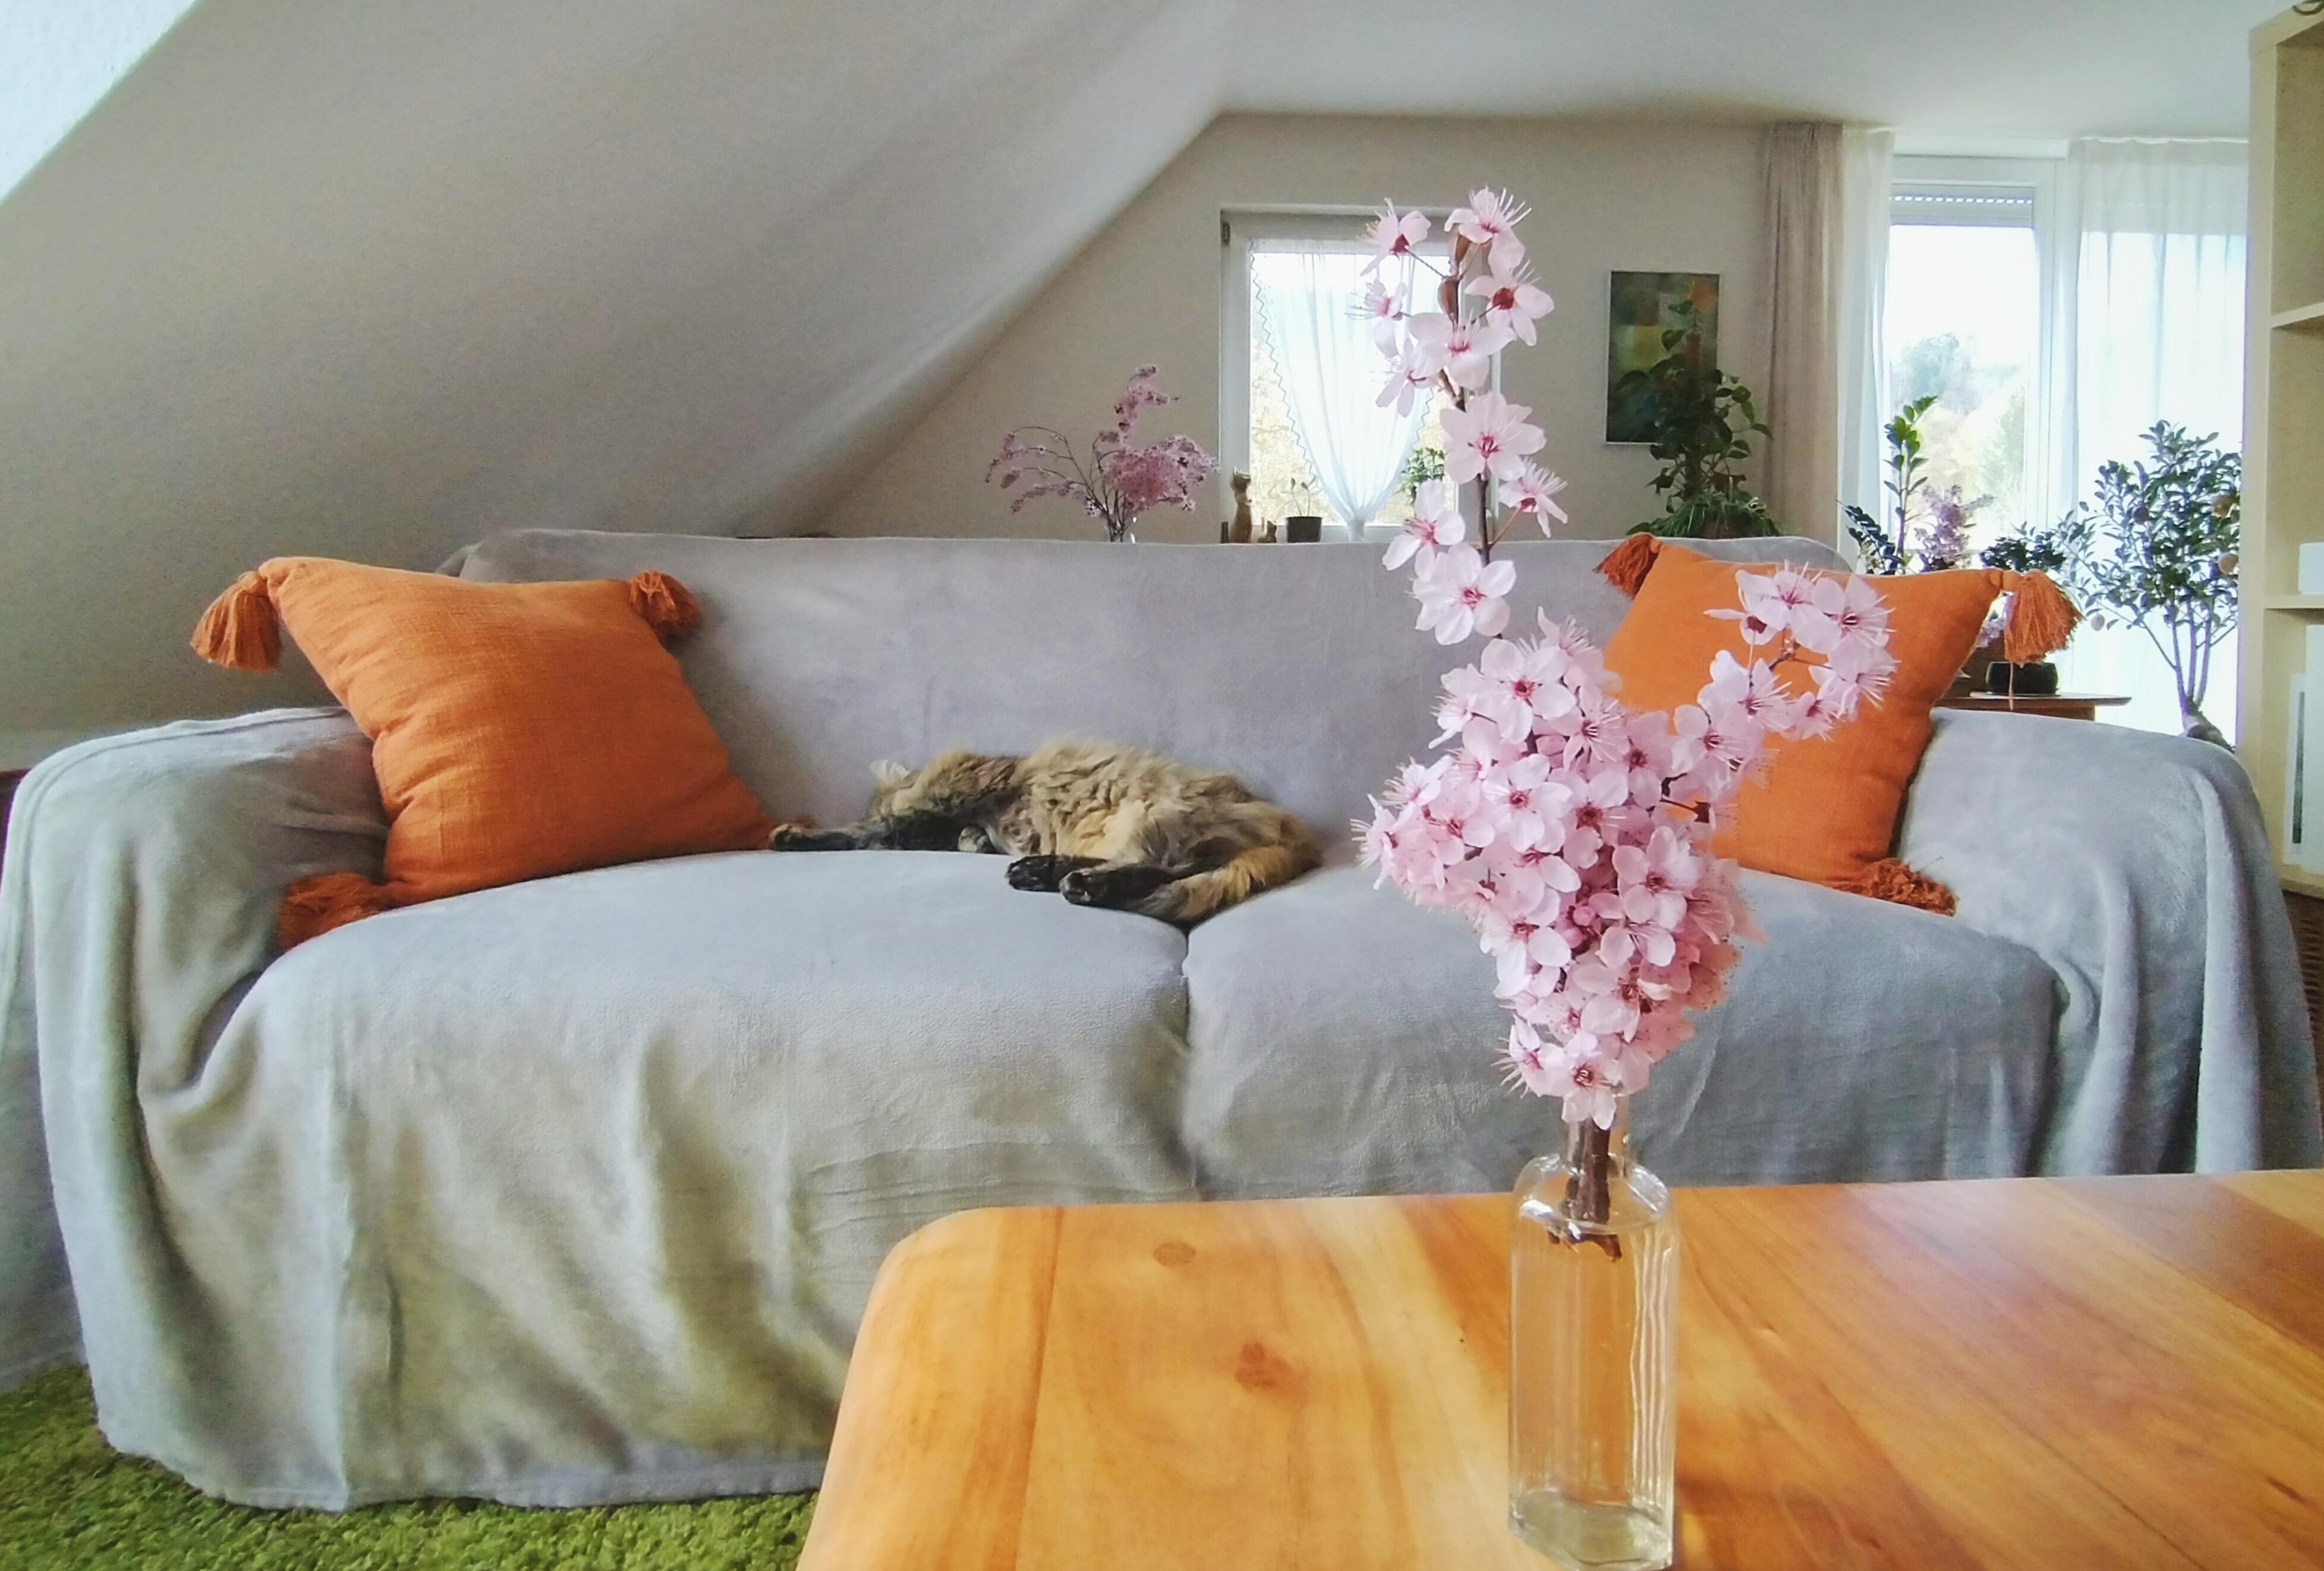 #wohnzimmer #couch #sofa #blüten #frischeblumen #kissen #katze #schrägdach #dachschräge